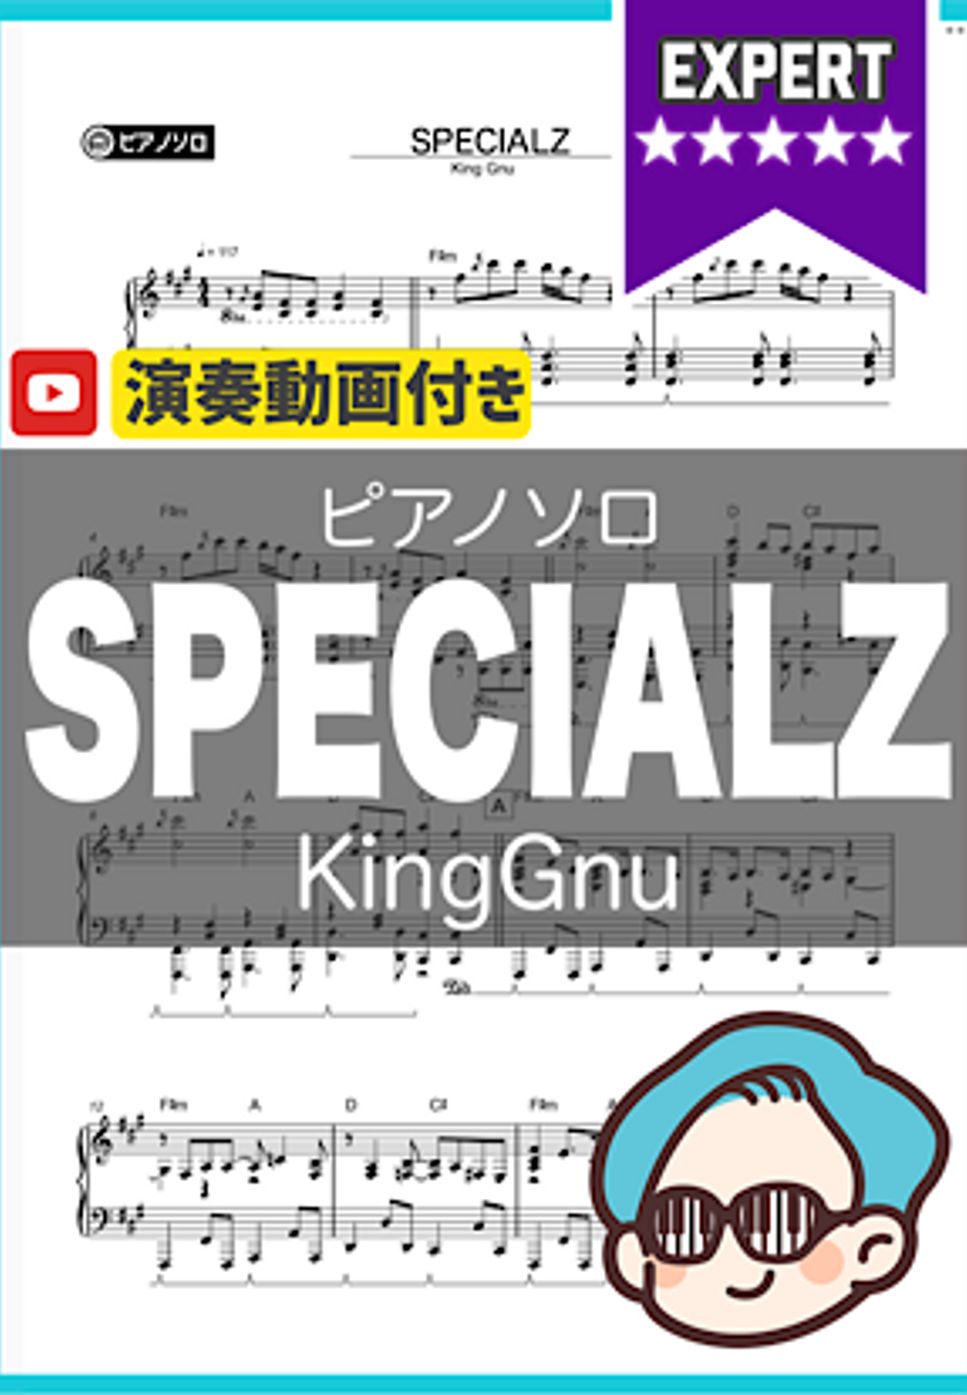 King Gnu - SPECIALZ by シータピアノ